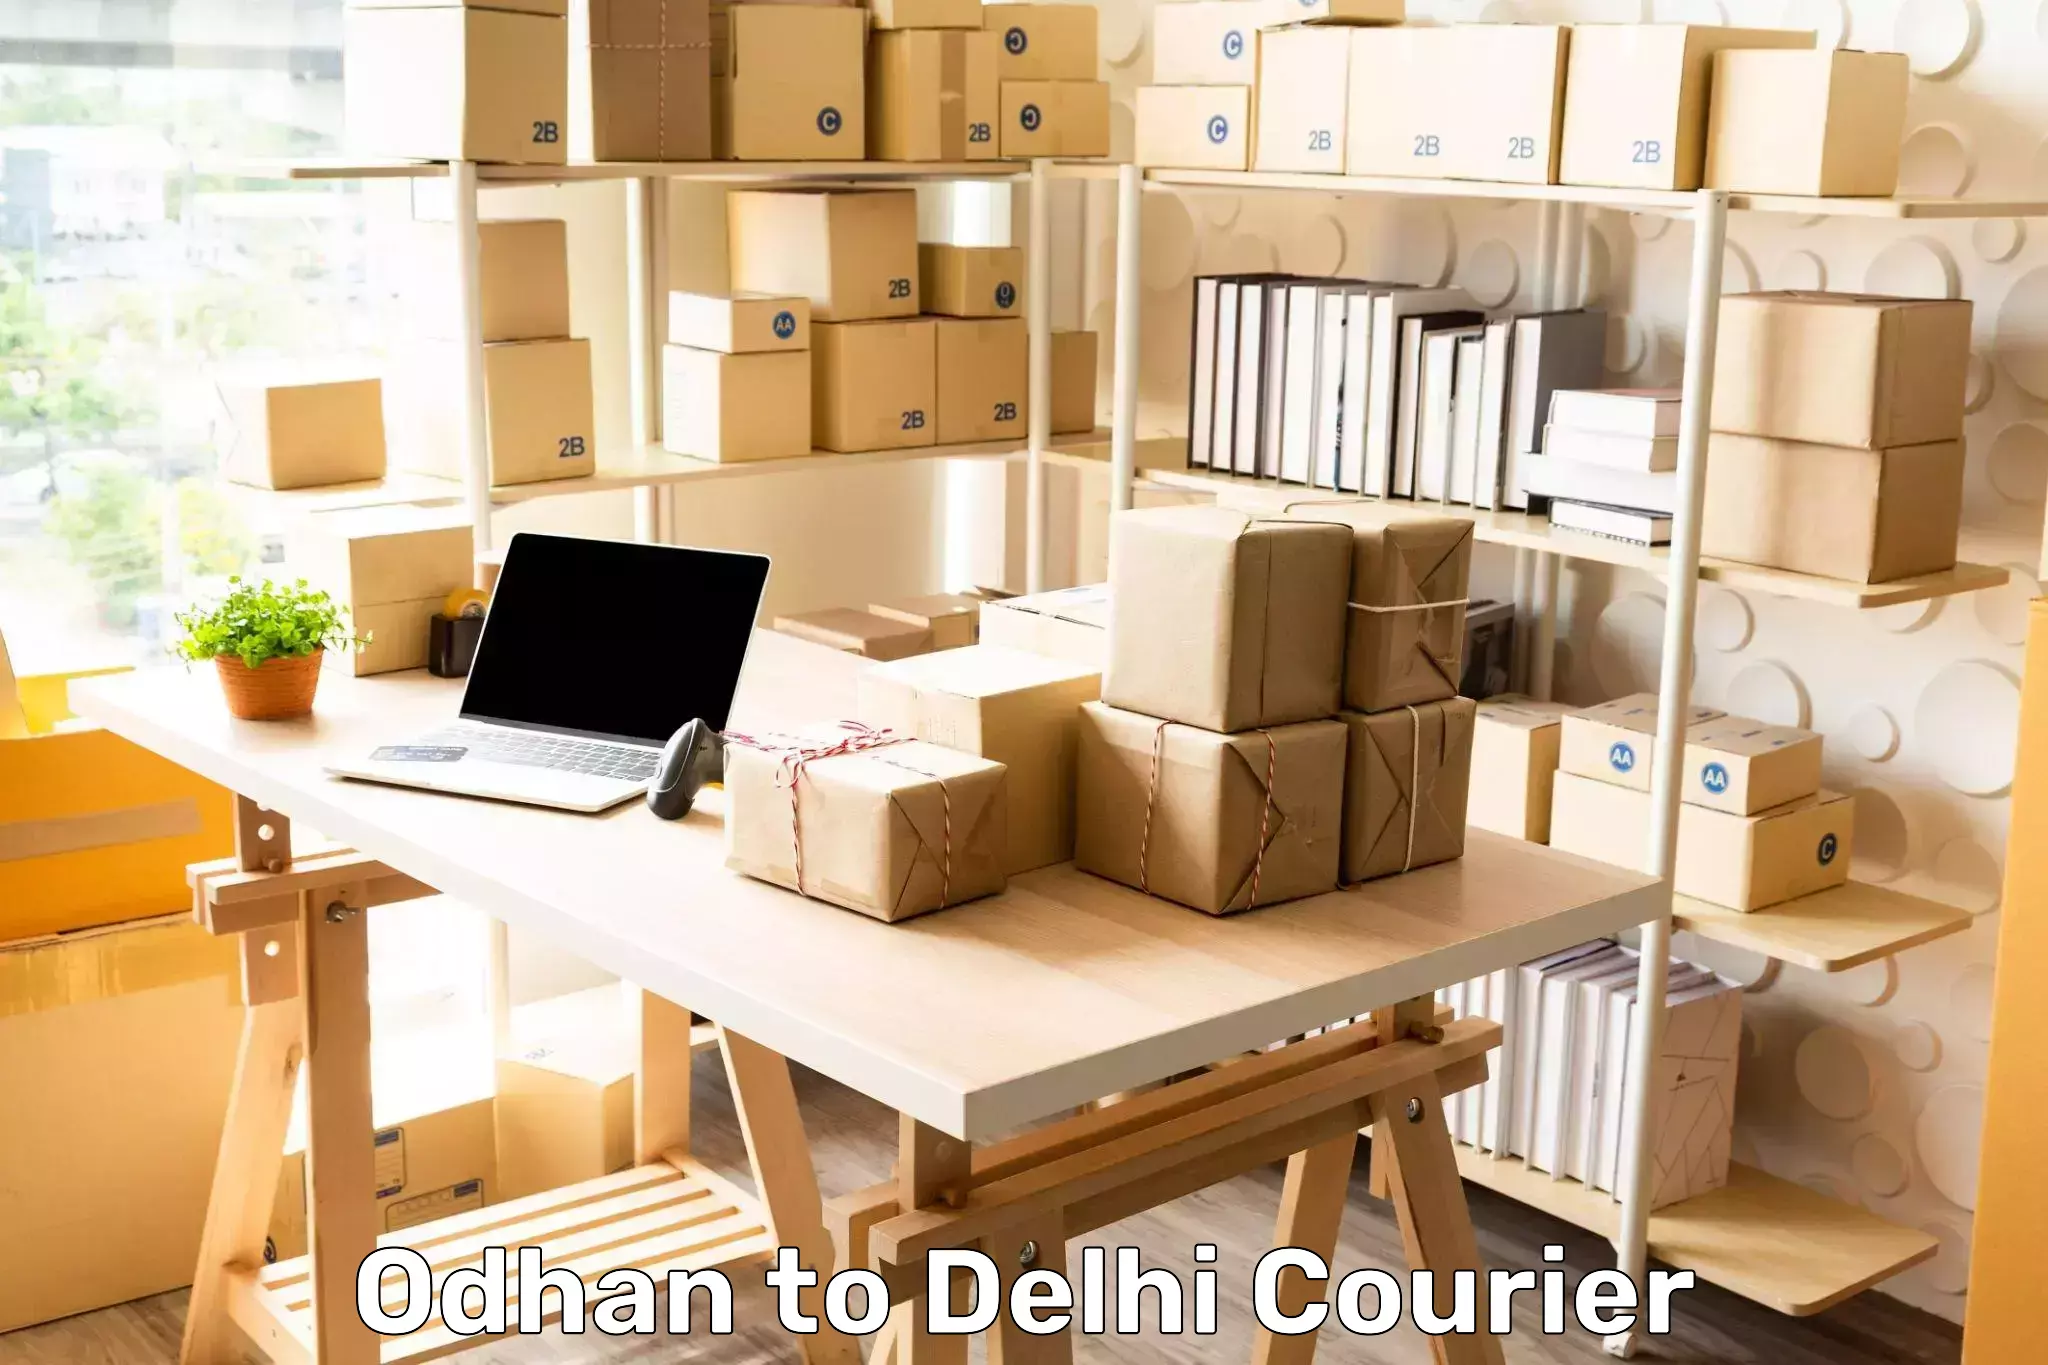 Professional courier services Odhan to Jamia Millia Islamia New Delhi